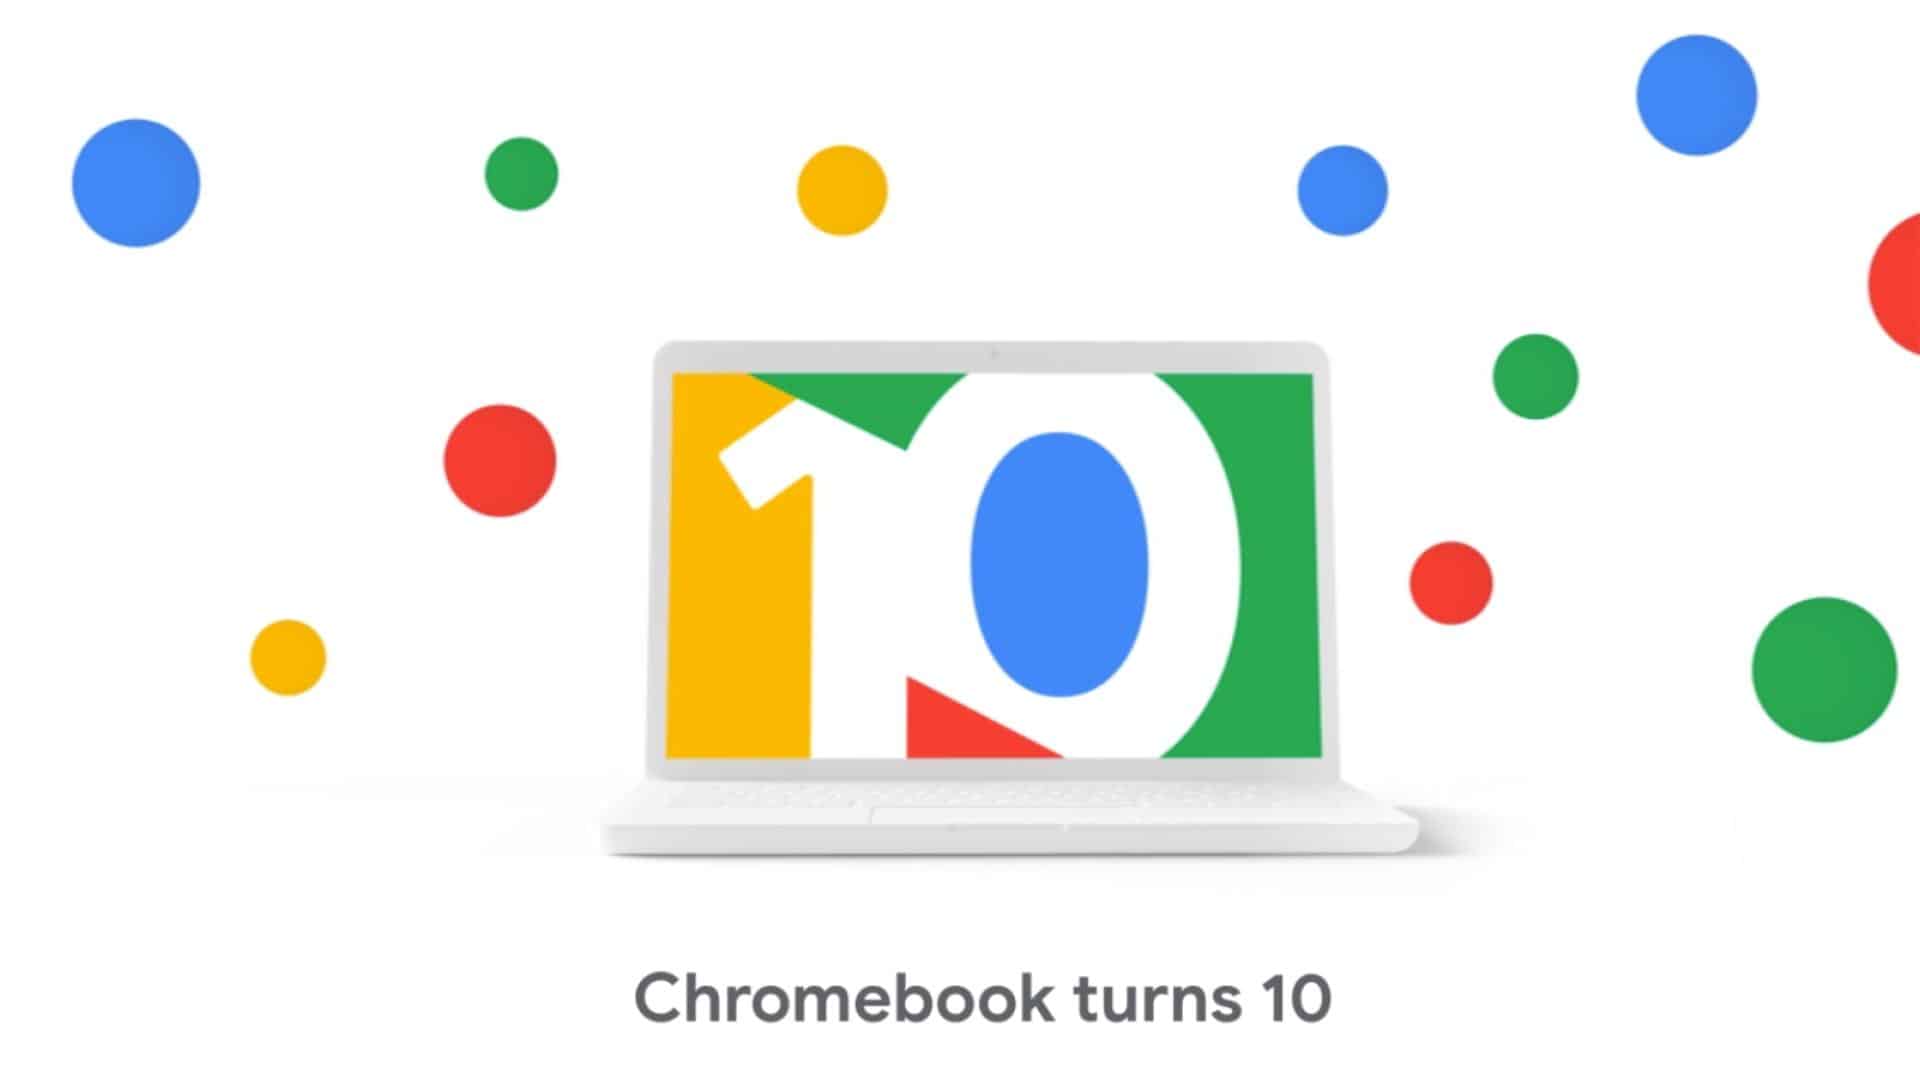 Ваш Chromebook получает множество функций к 10-летнему юбилею